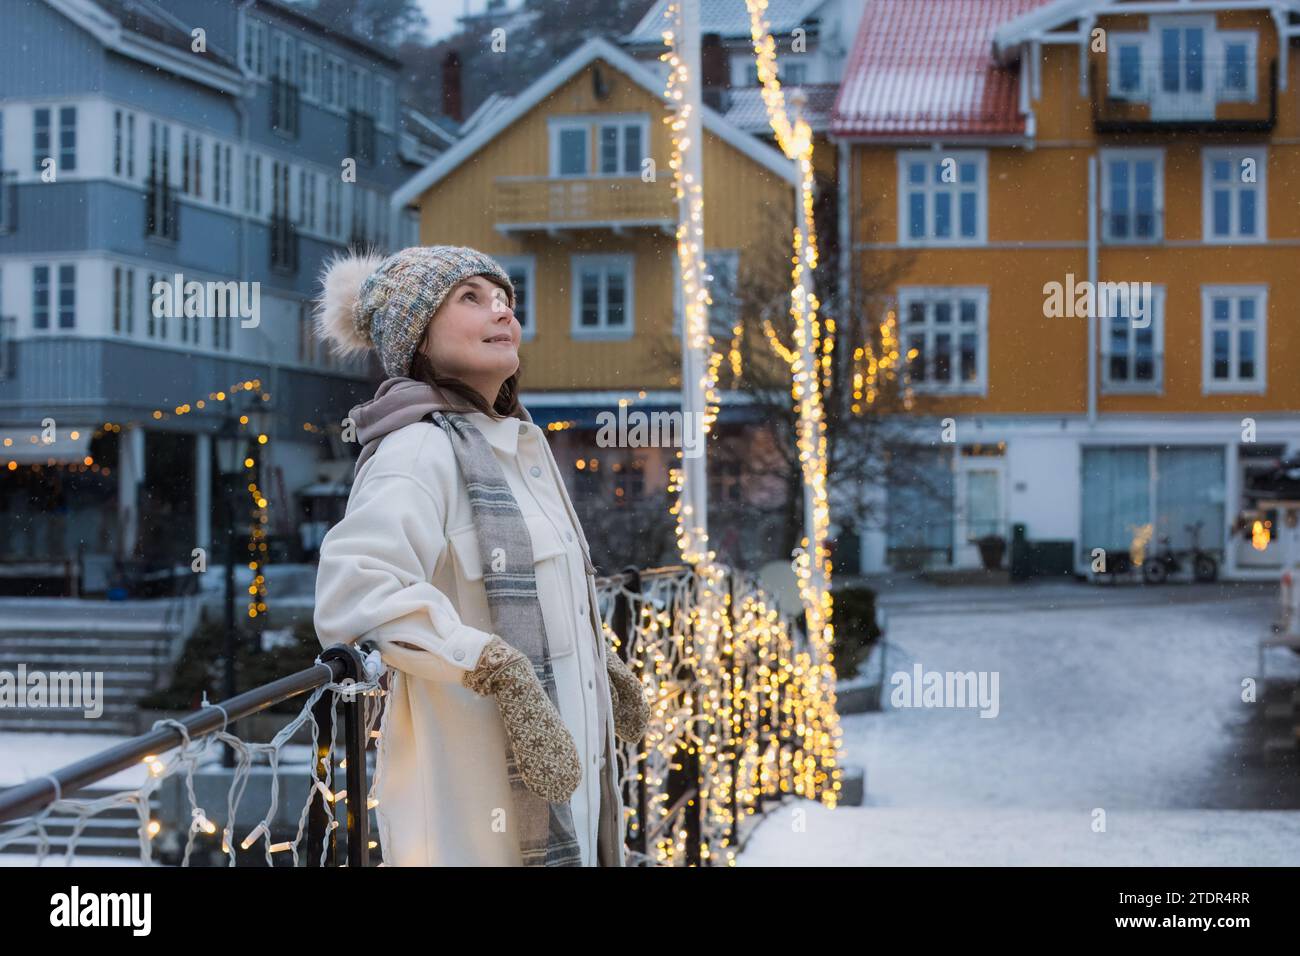 Une femme souriante dans sa prime, envoûtant le charme d'une ville nordique décorée pour Noël et le nouvel an. Photo de haute qualité Banque D'Images